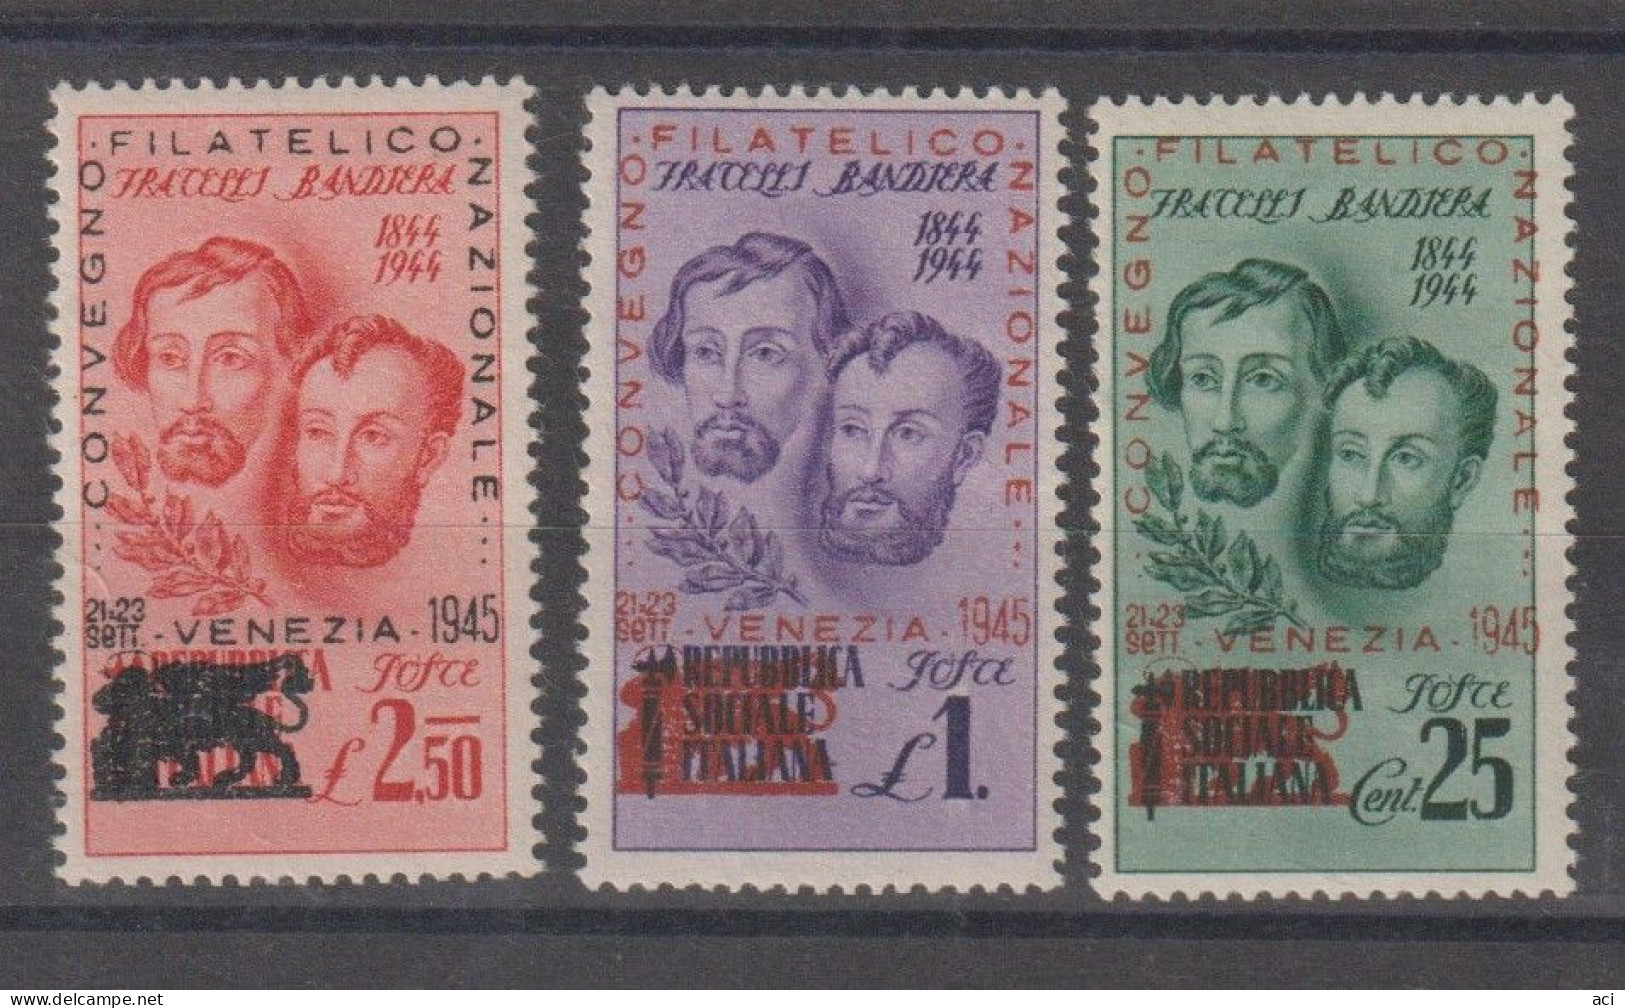 Italia Repubblica Sociale Italiana 1945 Fratelli Bandiera ,Congresso Filatelico Di Venezia,Nuovi, - Lokale/autonome Uitgaven